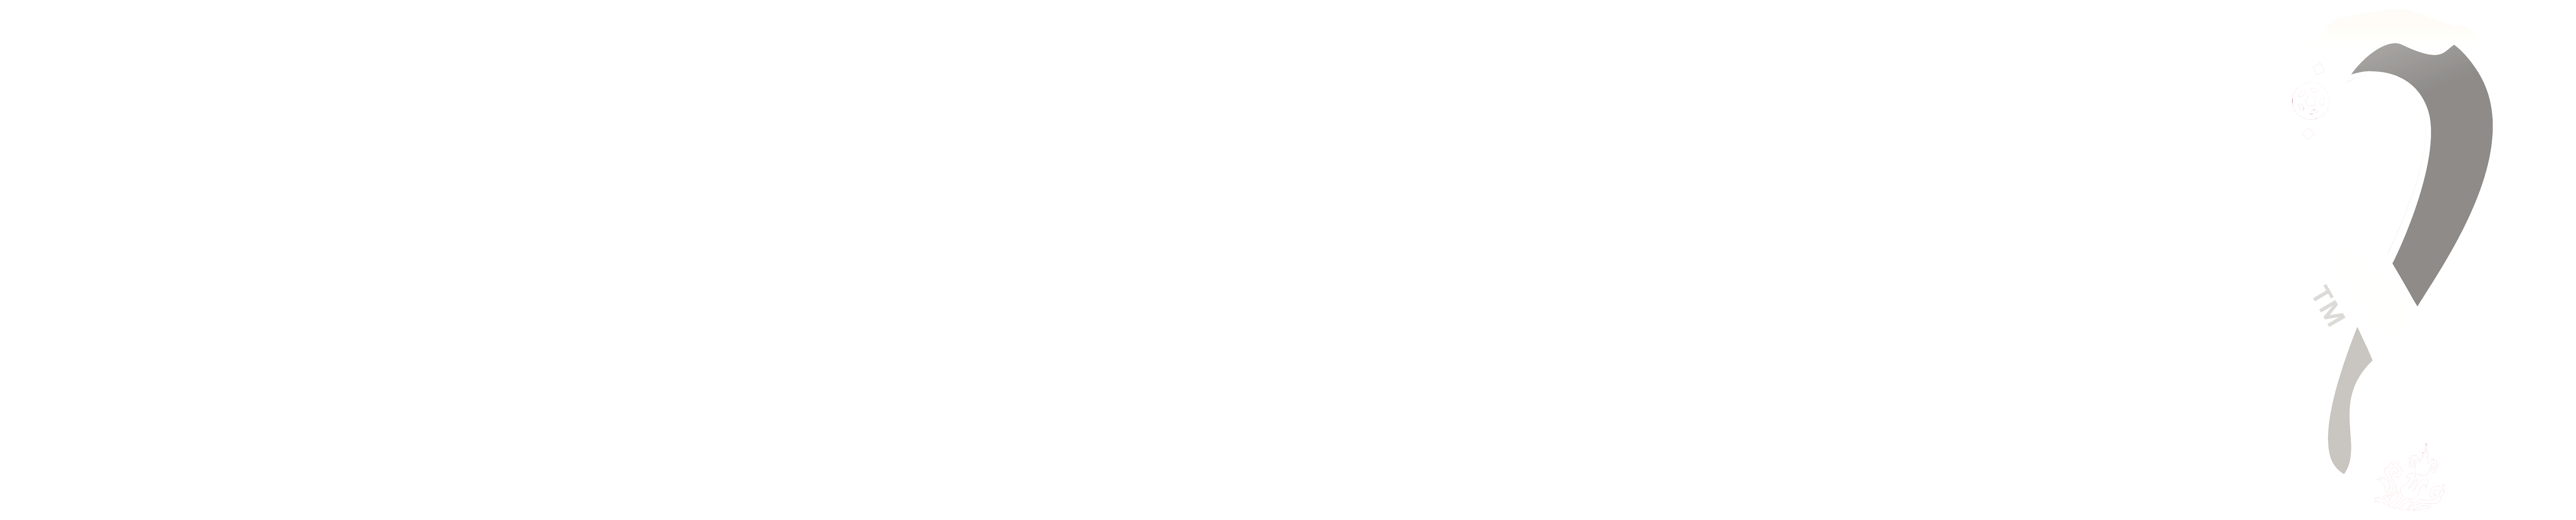 PRONOSTICADOR CATAR 2022